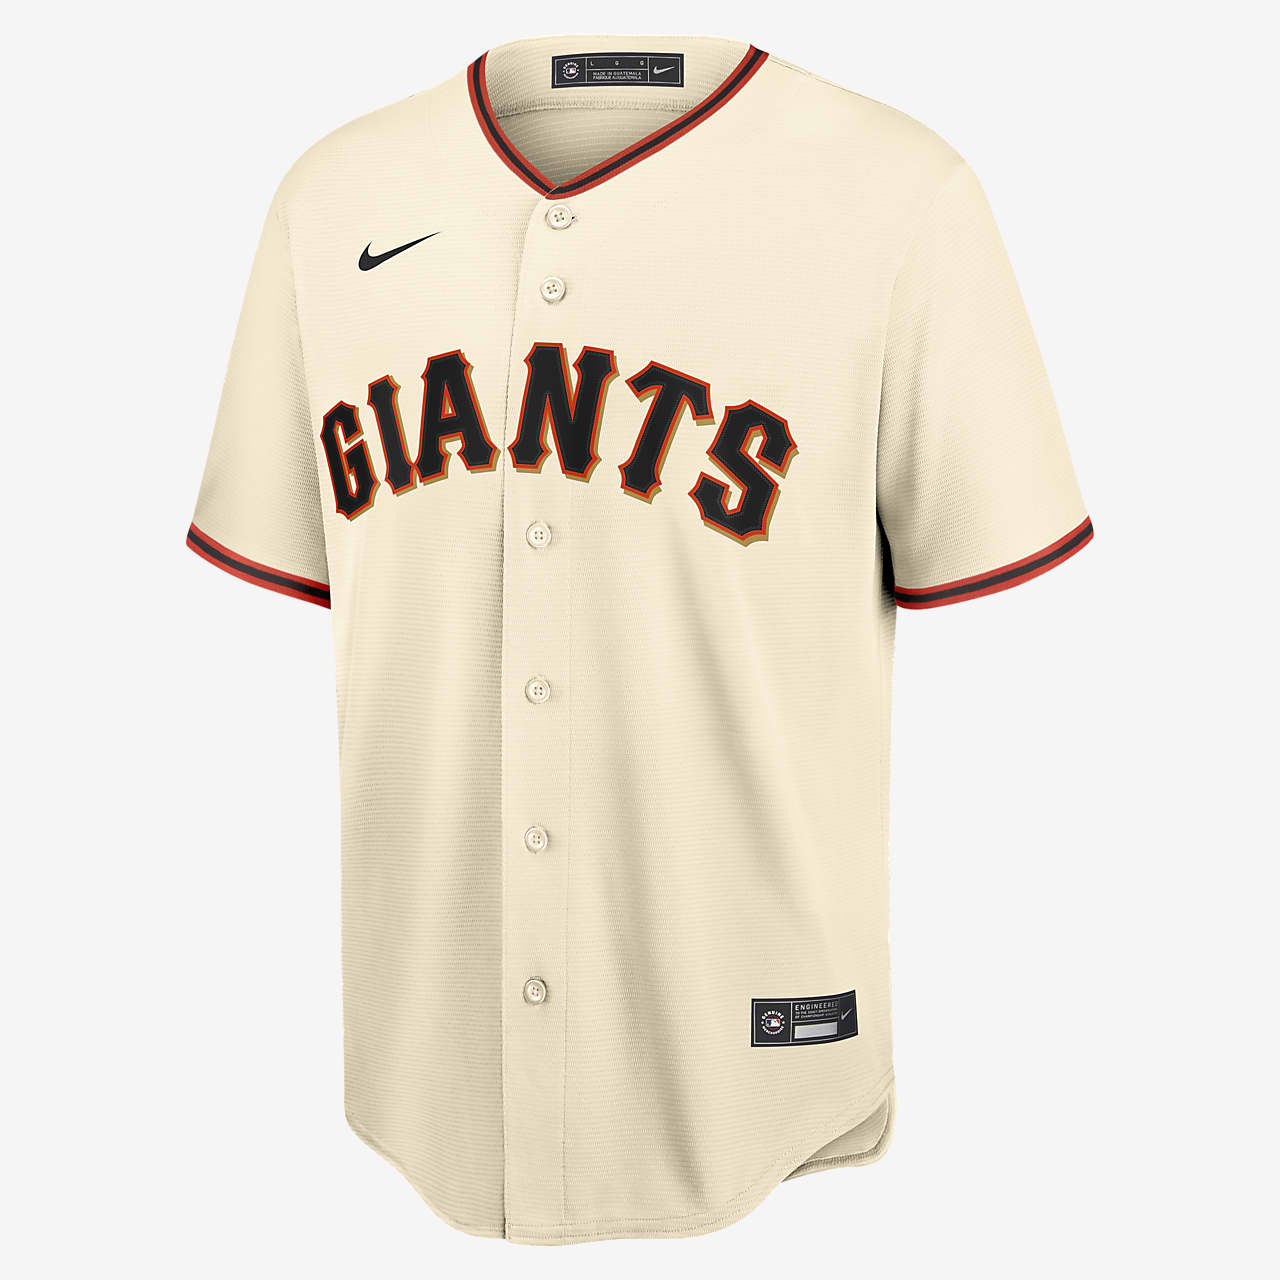 MLB San Francisco Giants (Buster Posey 